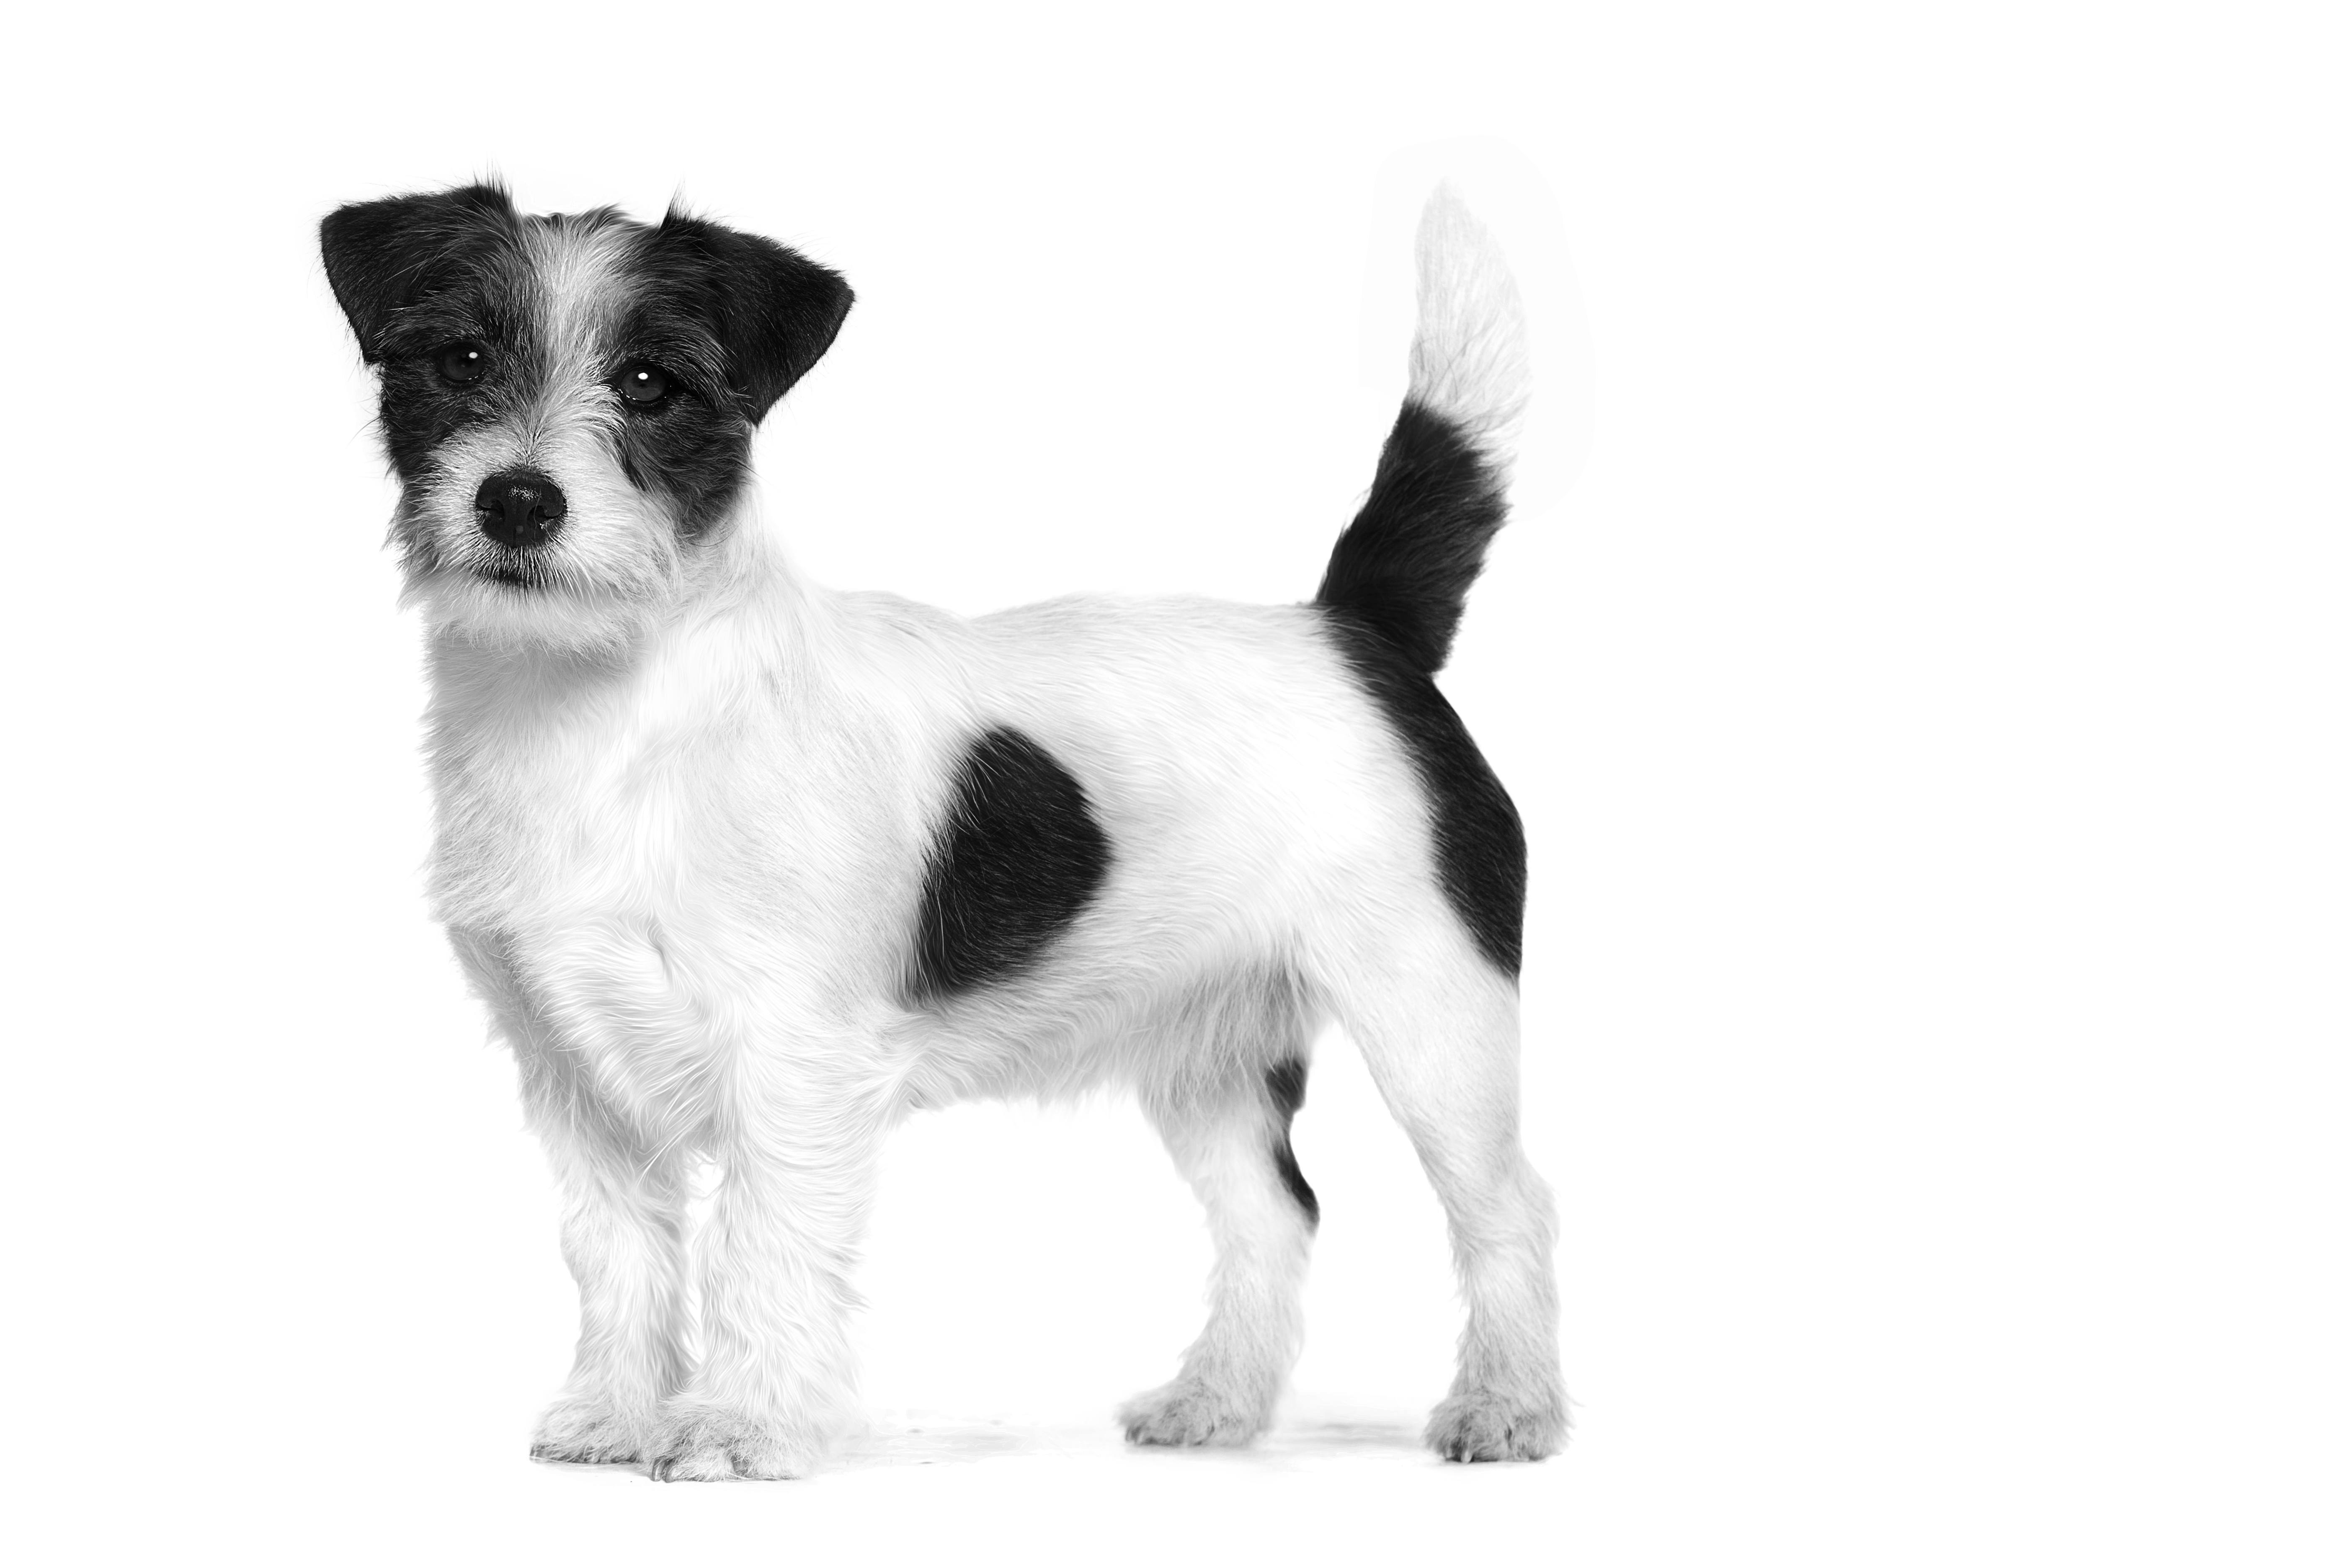 Jack Russel Terrier adulto de pie en blanco y negro sobre un fondo blanco